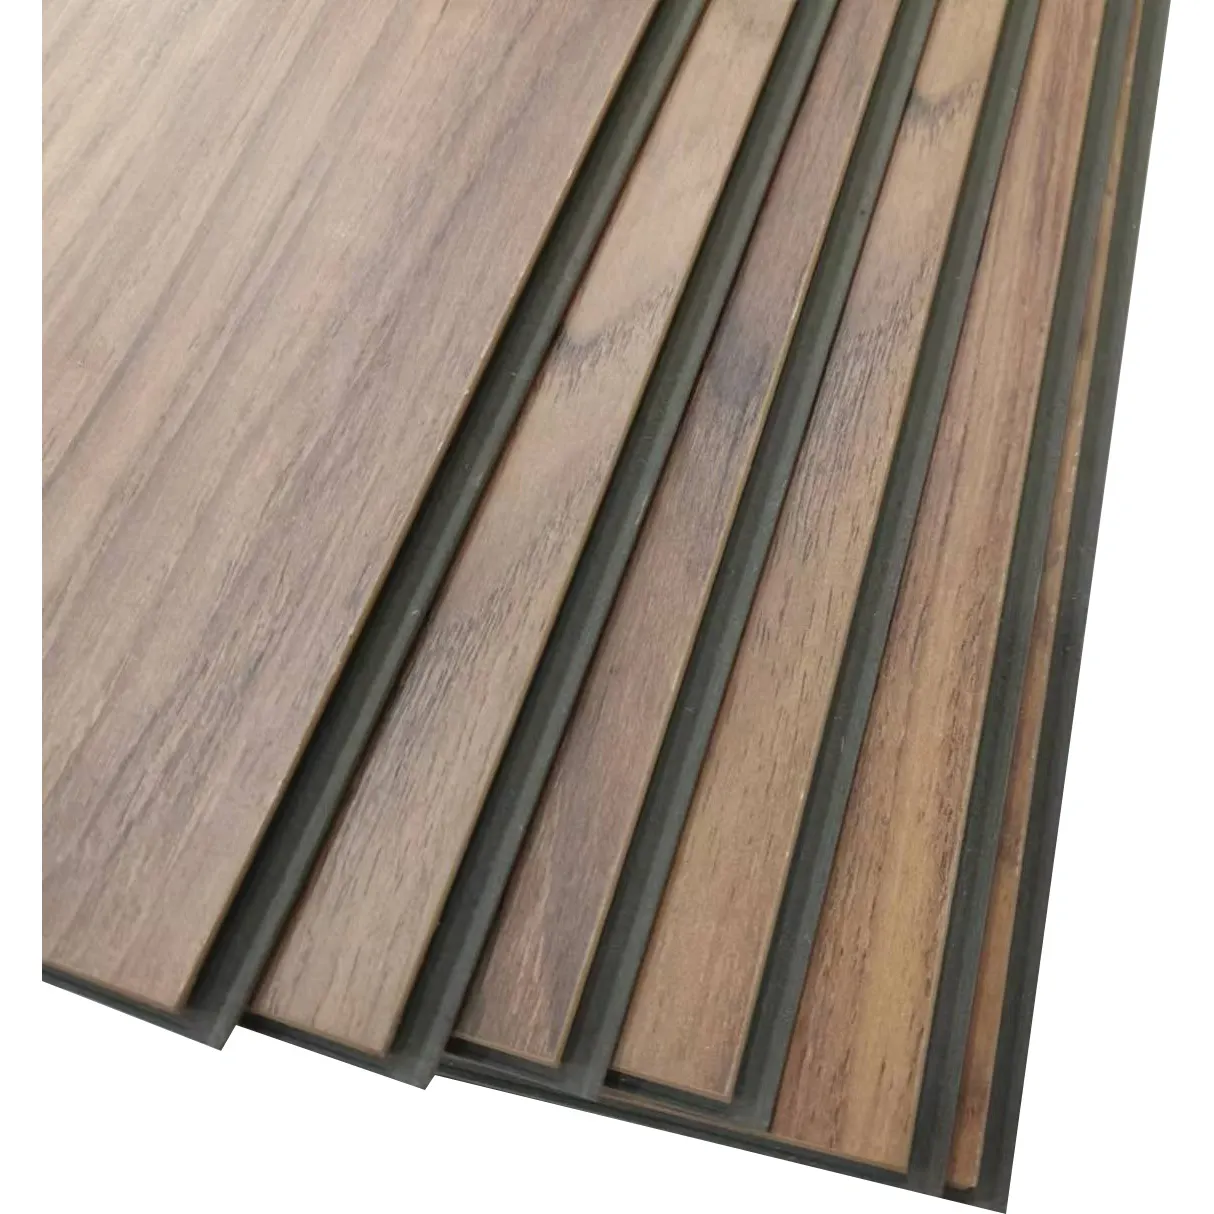 waterproof laminate flooring 7mm 8mm 12mm HDF Embossed Surface Laminate Wood Flooring